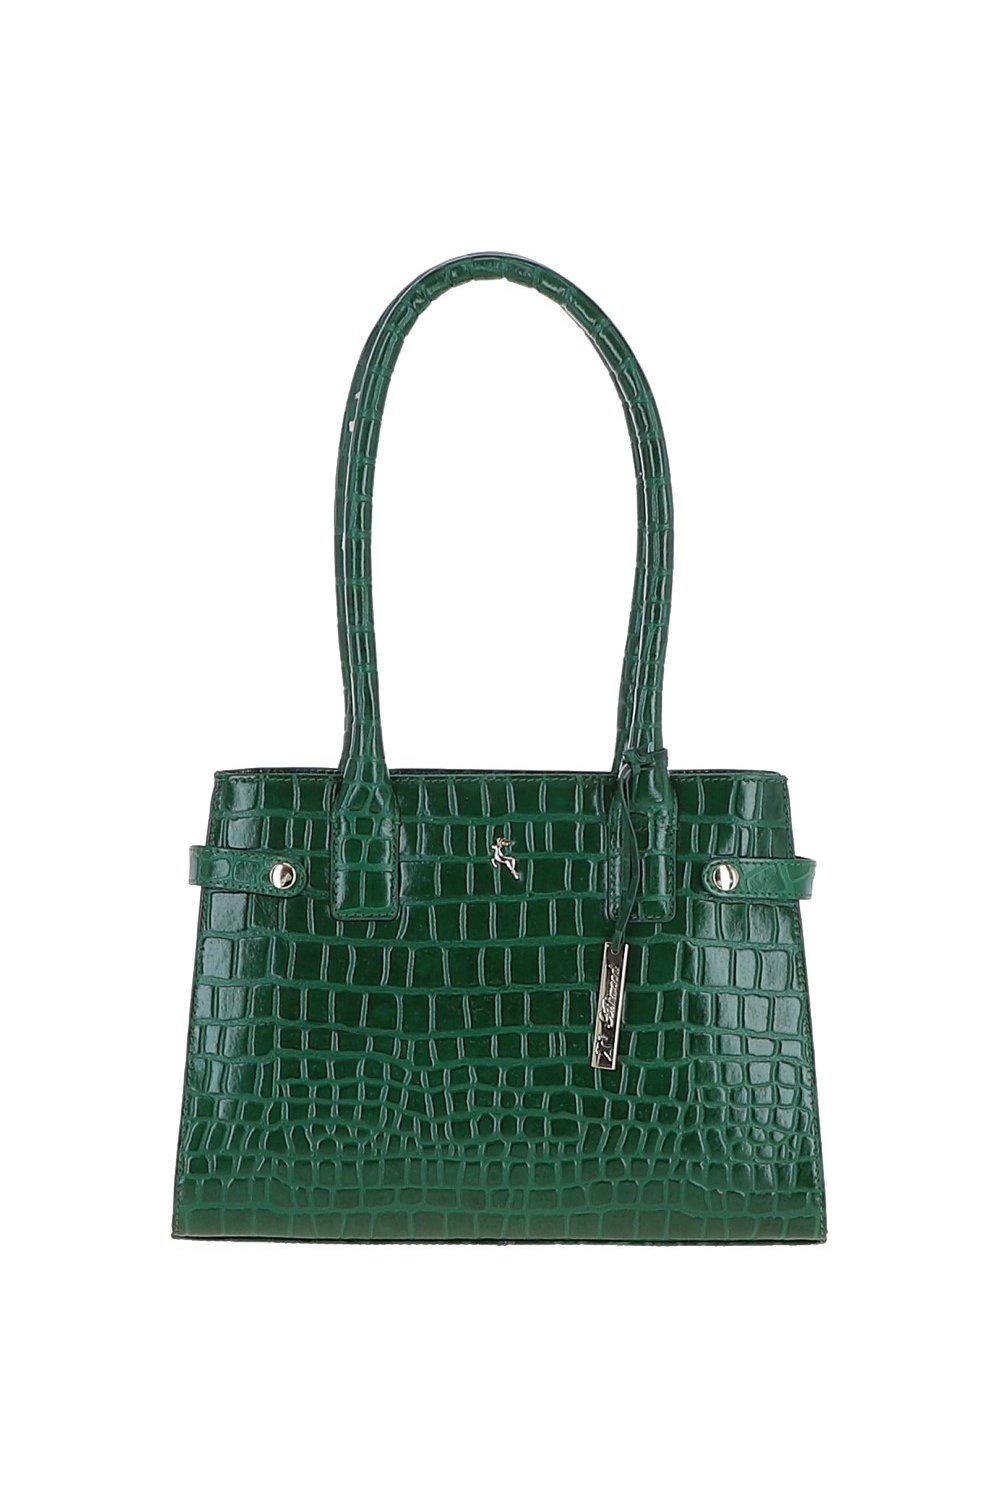 цена Двухсекционная большая сумка из натуральной кожи с принтом под крокодила Ashwood Leather, зеленый